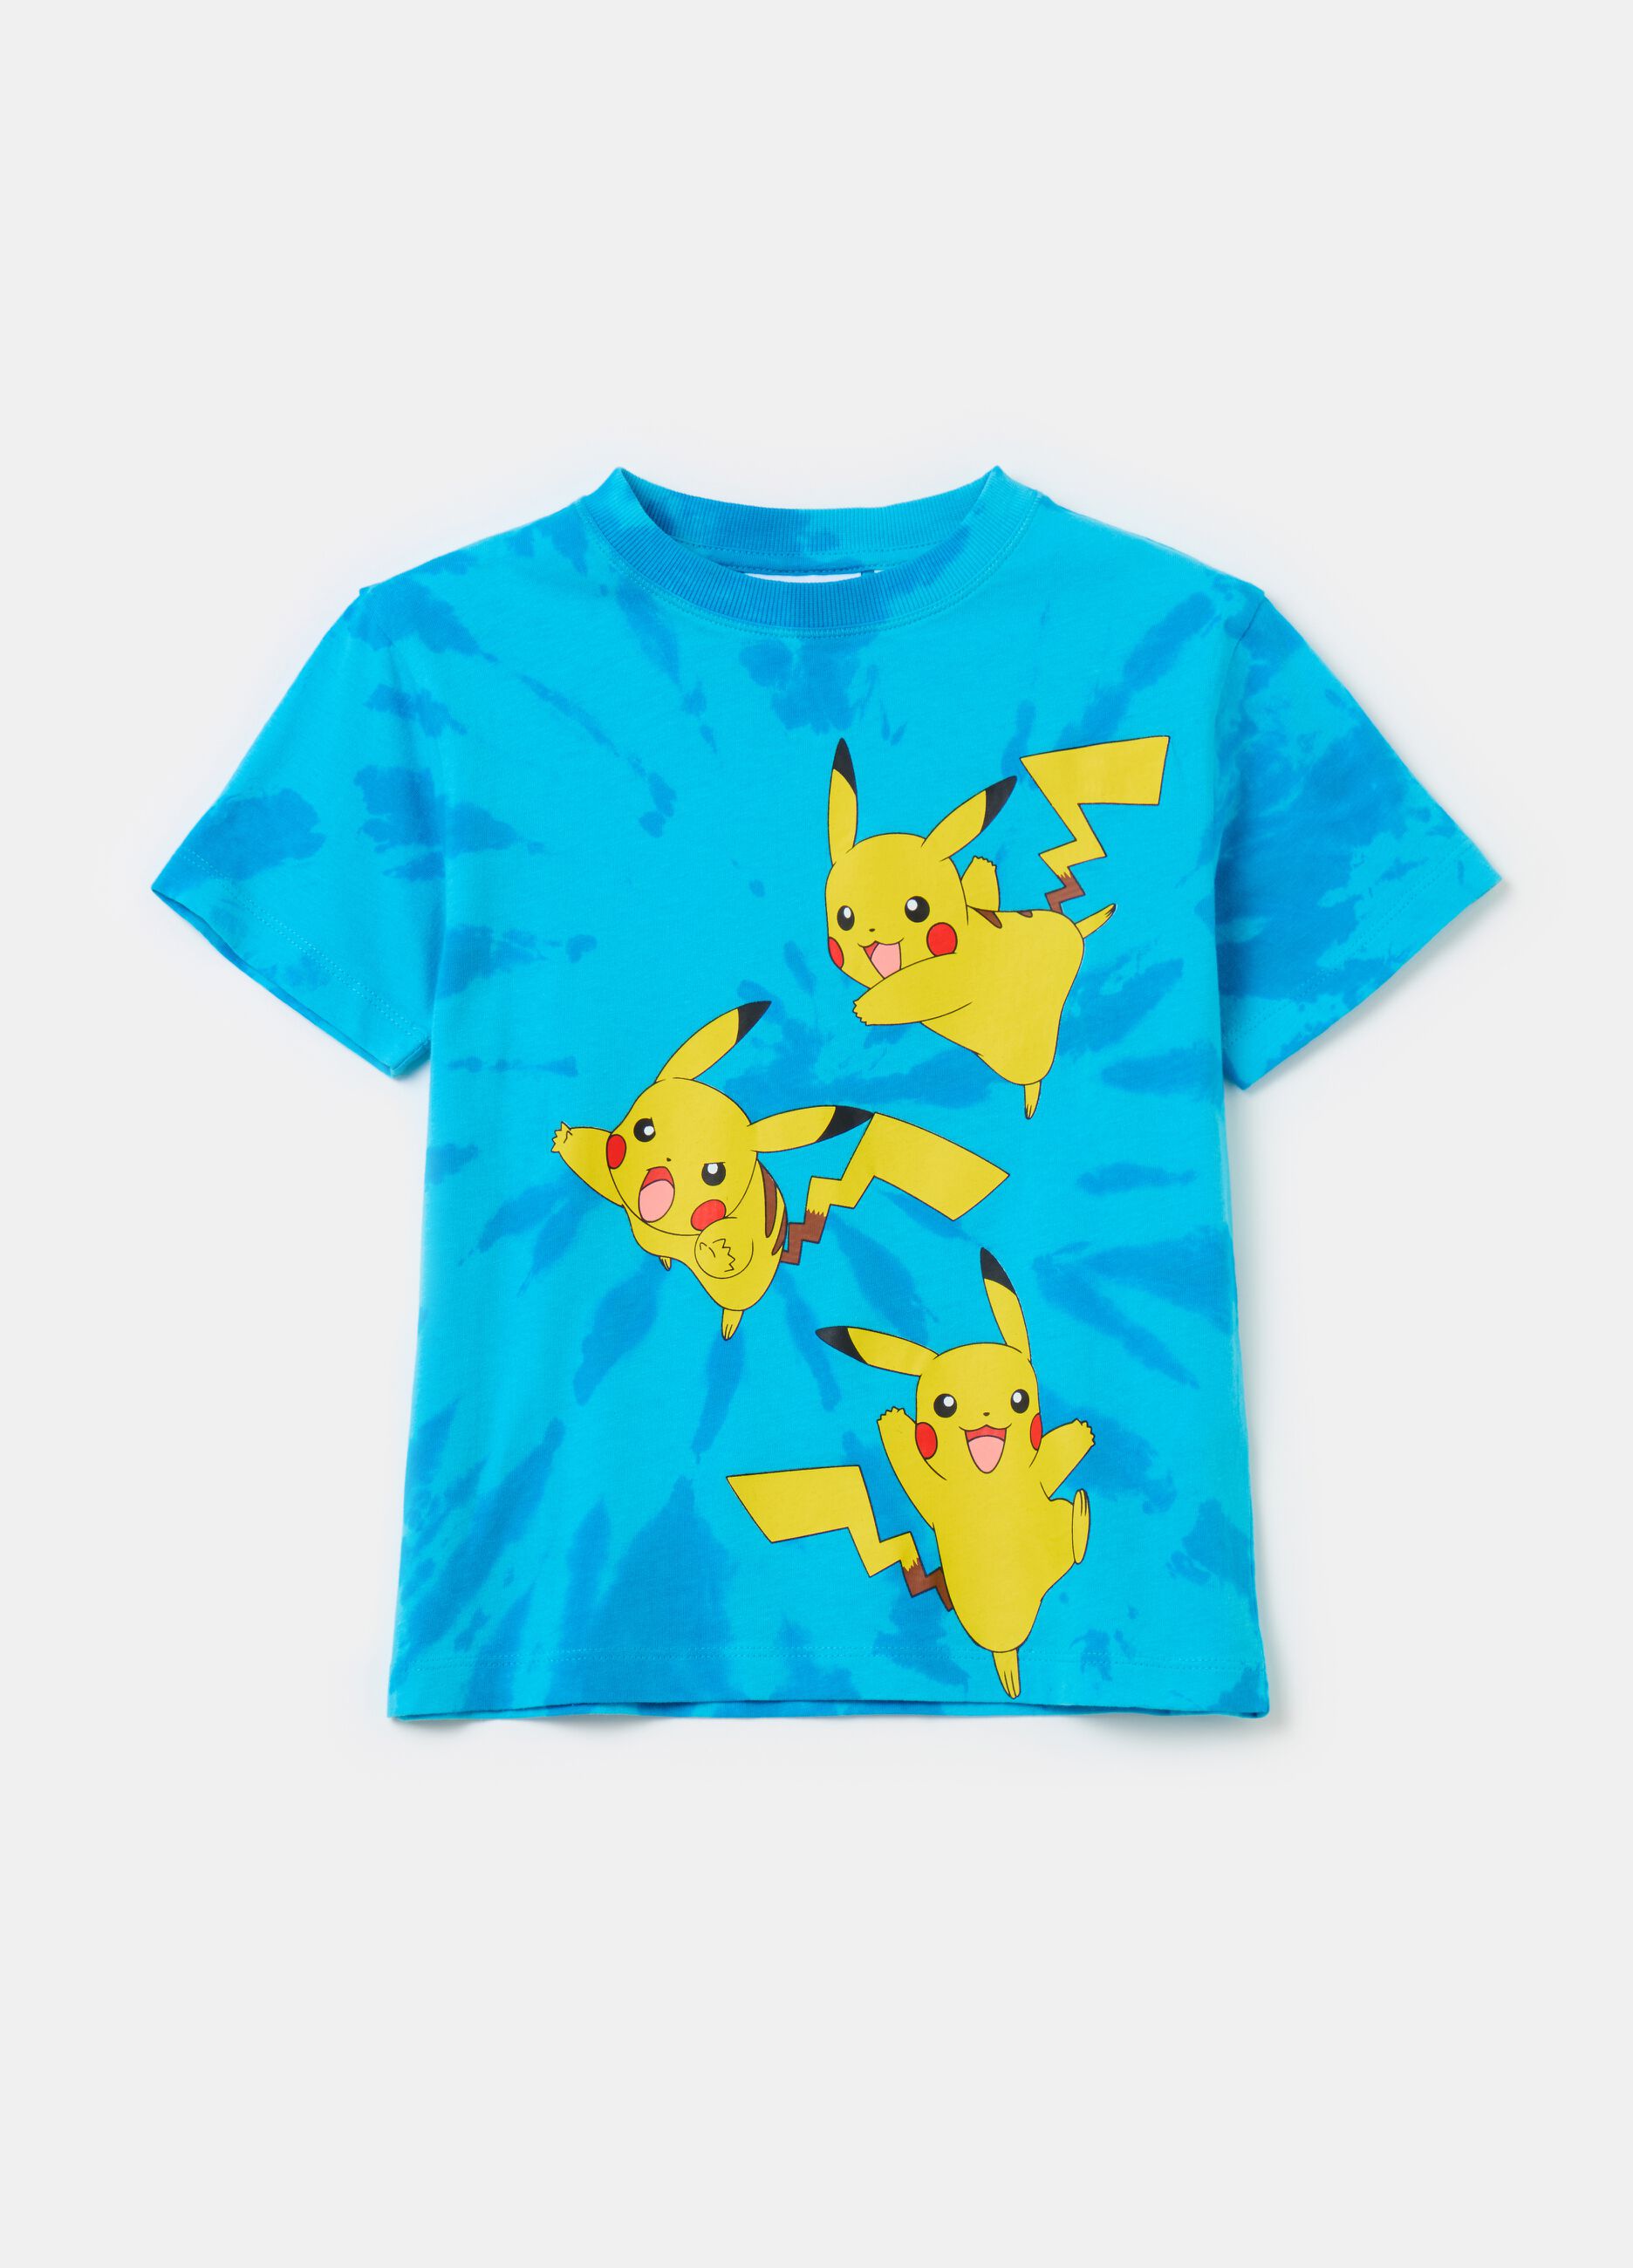 Tie-dye T-shirt with Pokémon Pikachu print